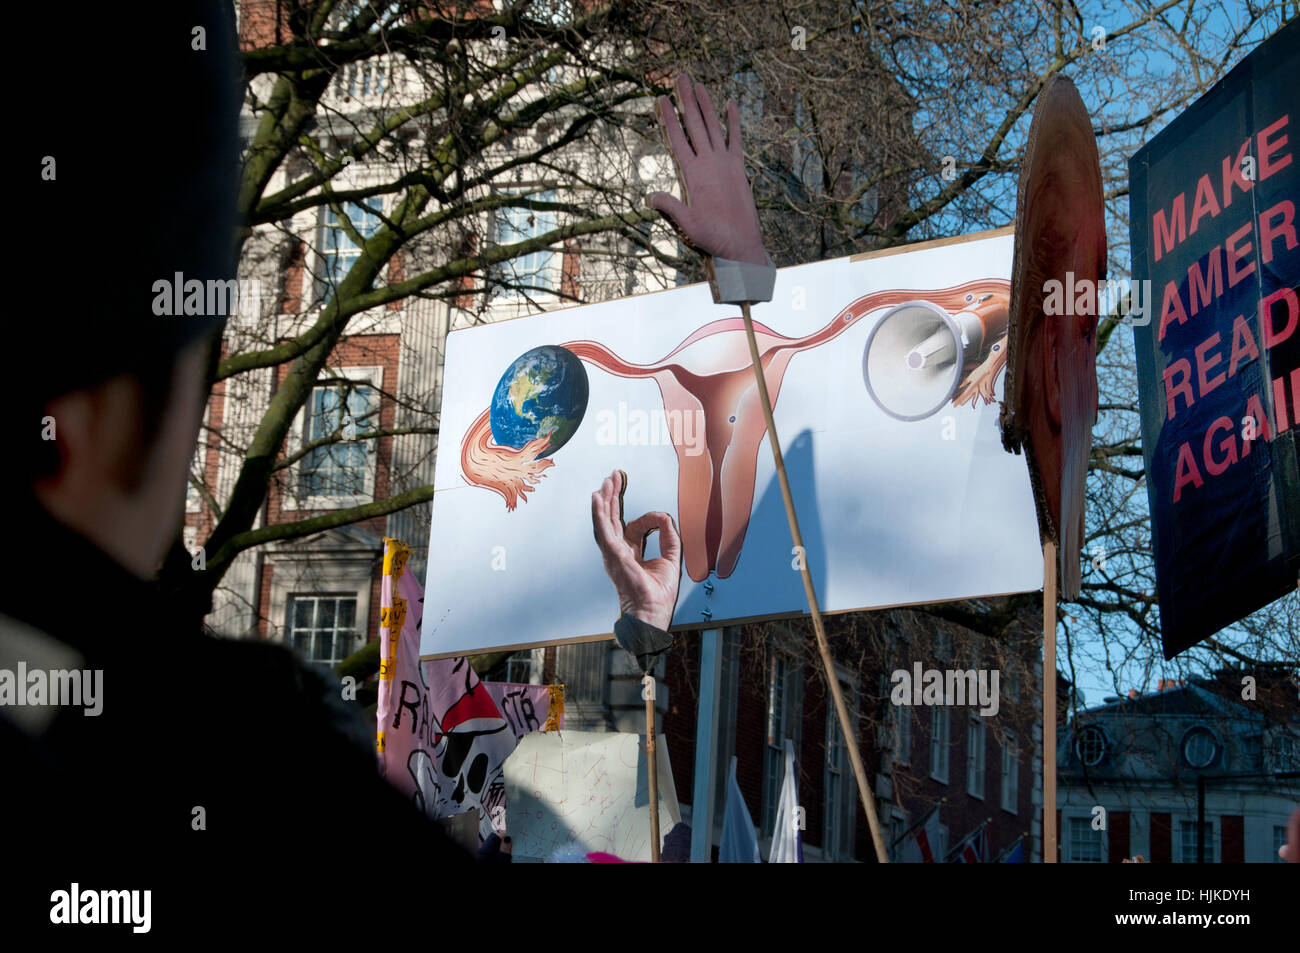 Frauen Anti-Trump März, London. Trumps Kopf auf einem Stick, seine Hände und ein Plakat zeigt eine Frau reproduktive Organe Stockfoto